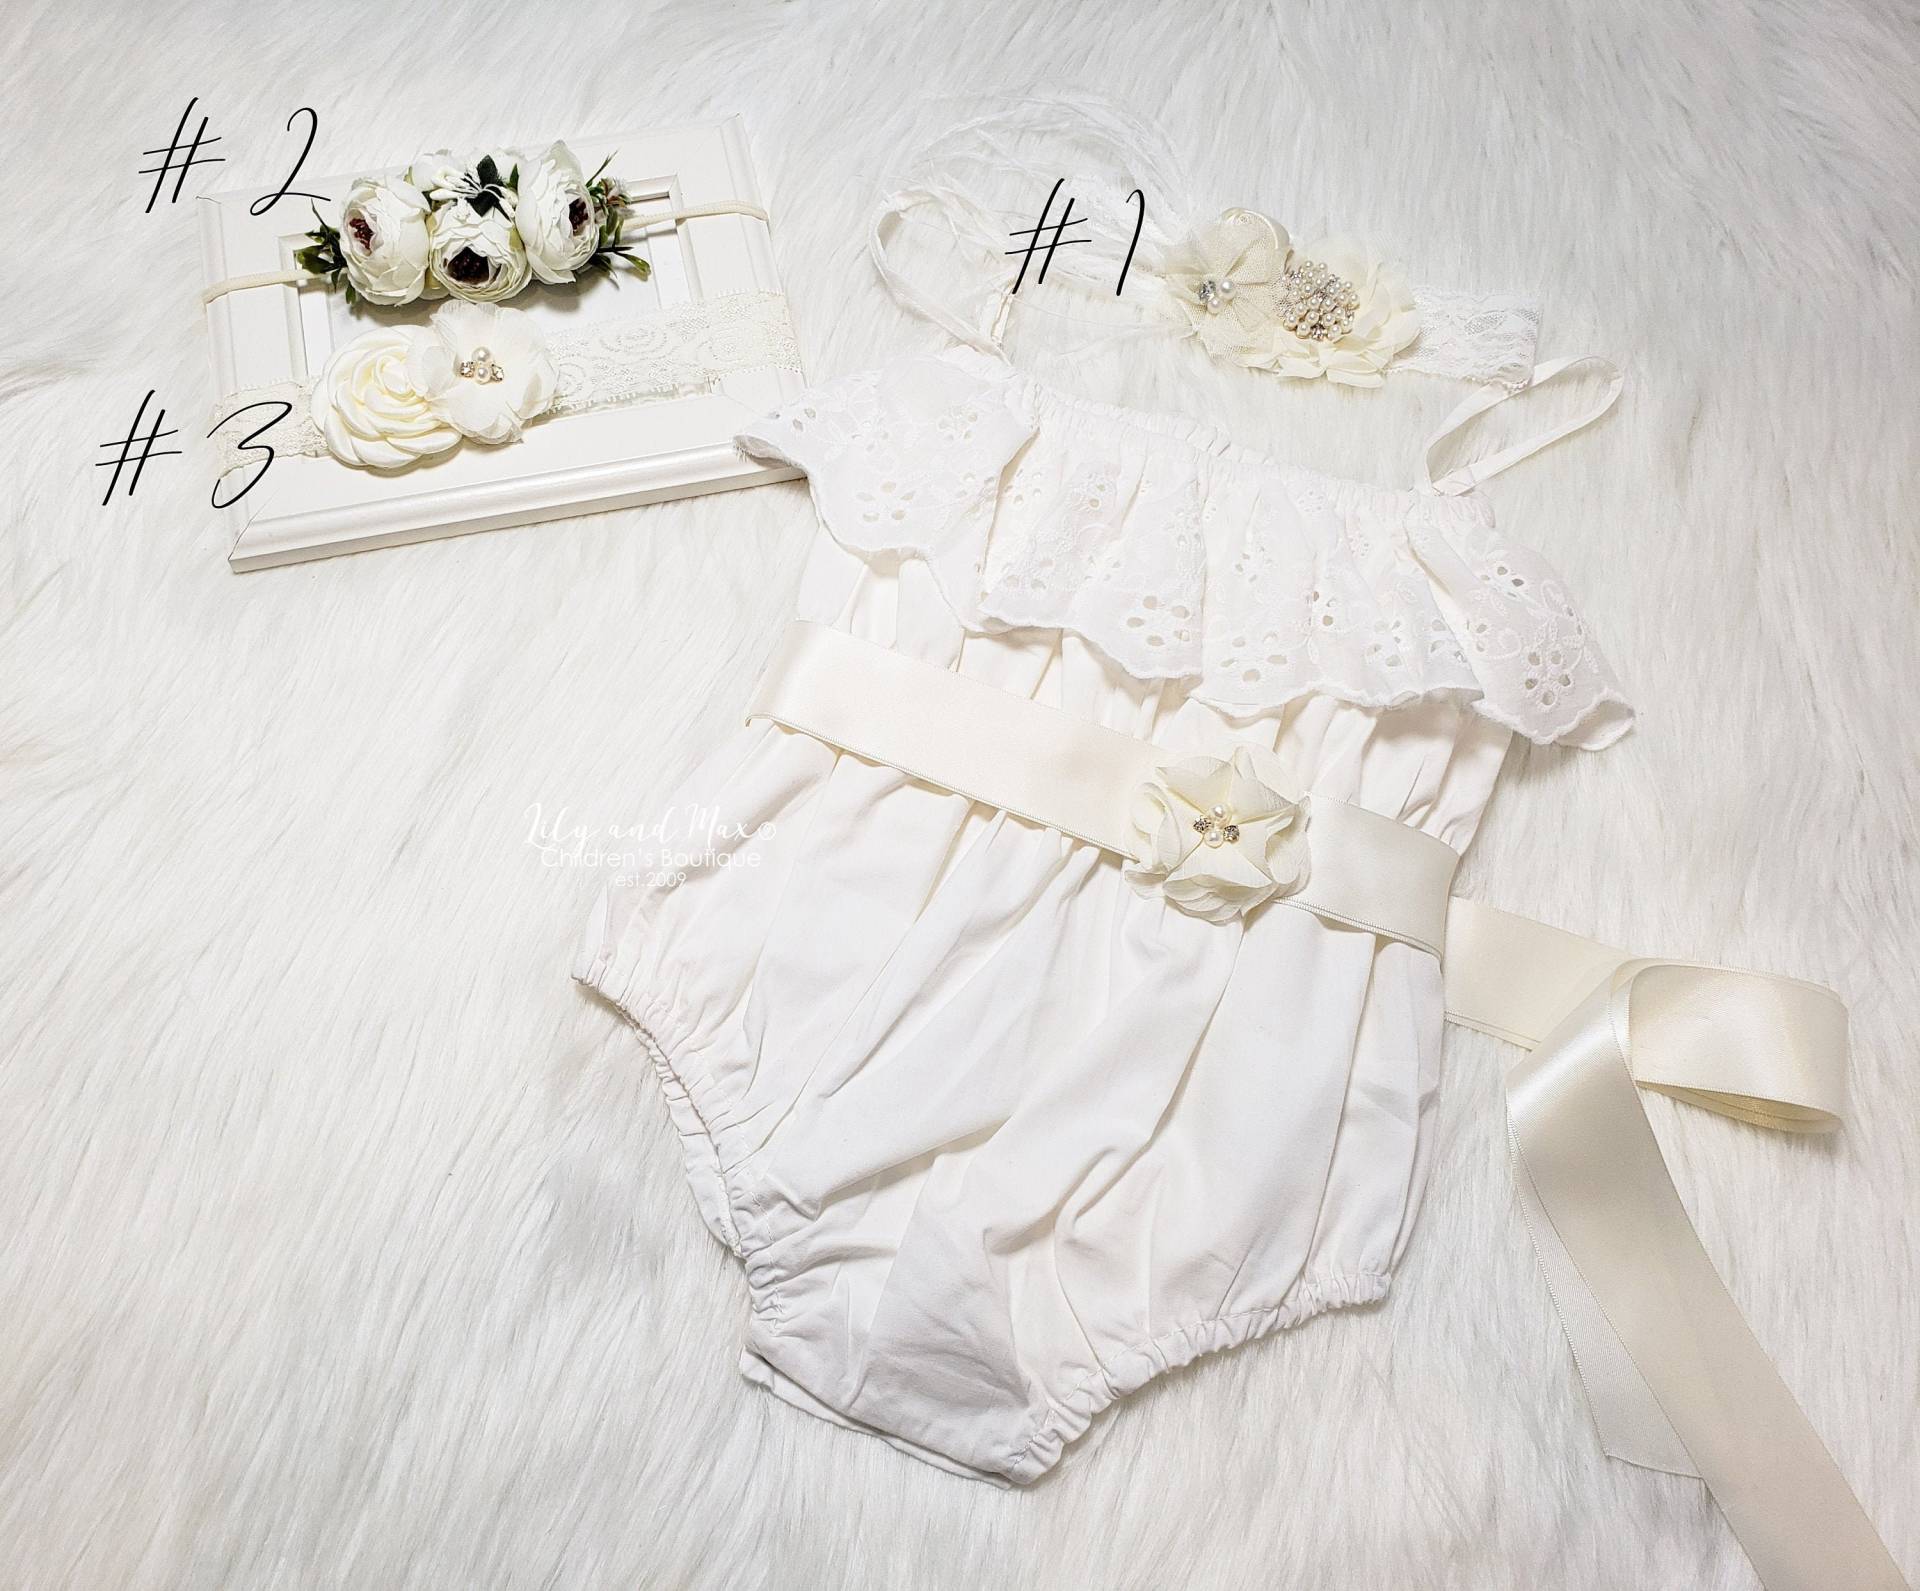 Boho Chic Aus Weißen Baby Mädchen Strampler, Boho Chic Weißer Spitze Outfit, 1. Geburtstag Taufe Strampler Set von LilyandMax